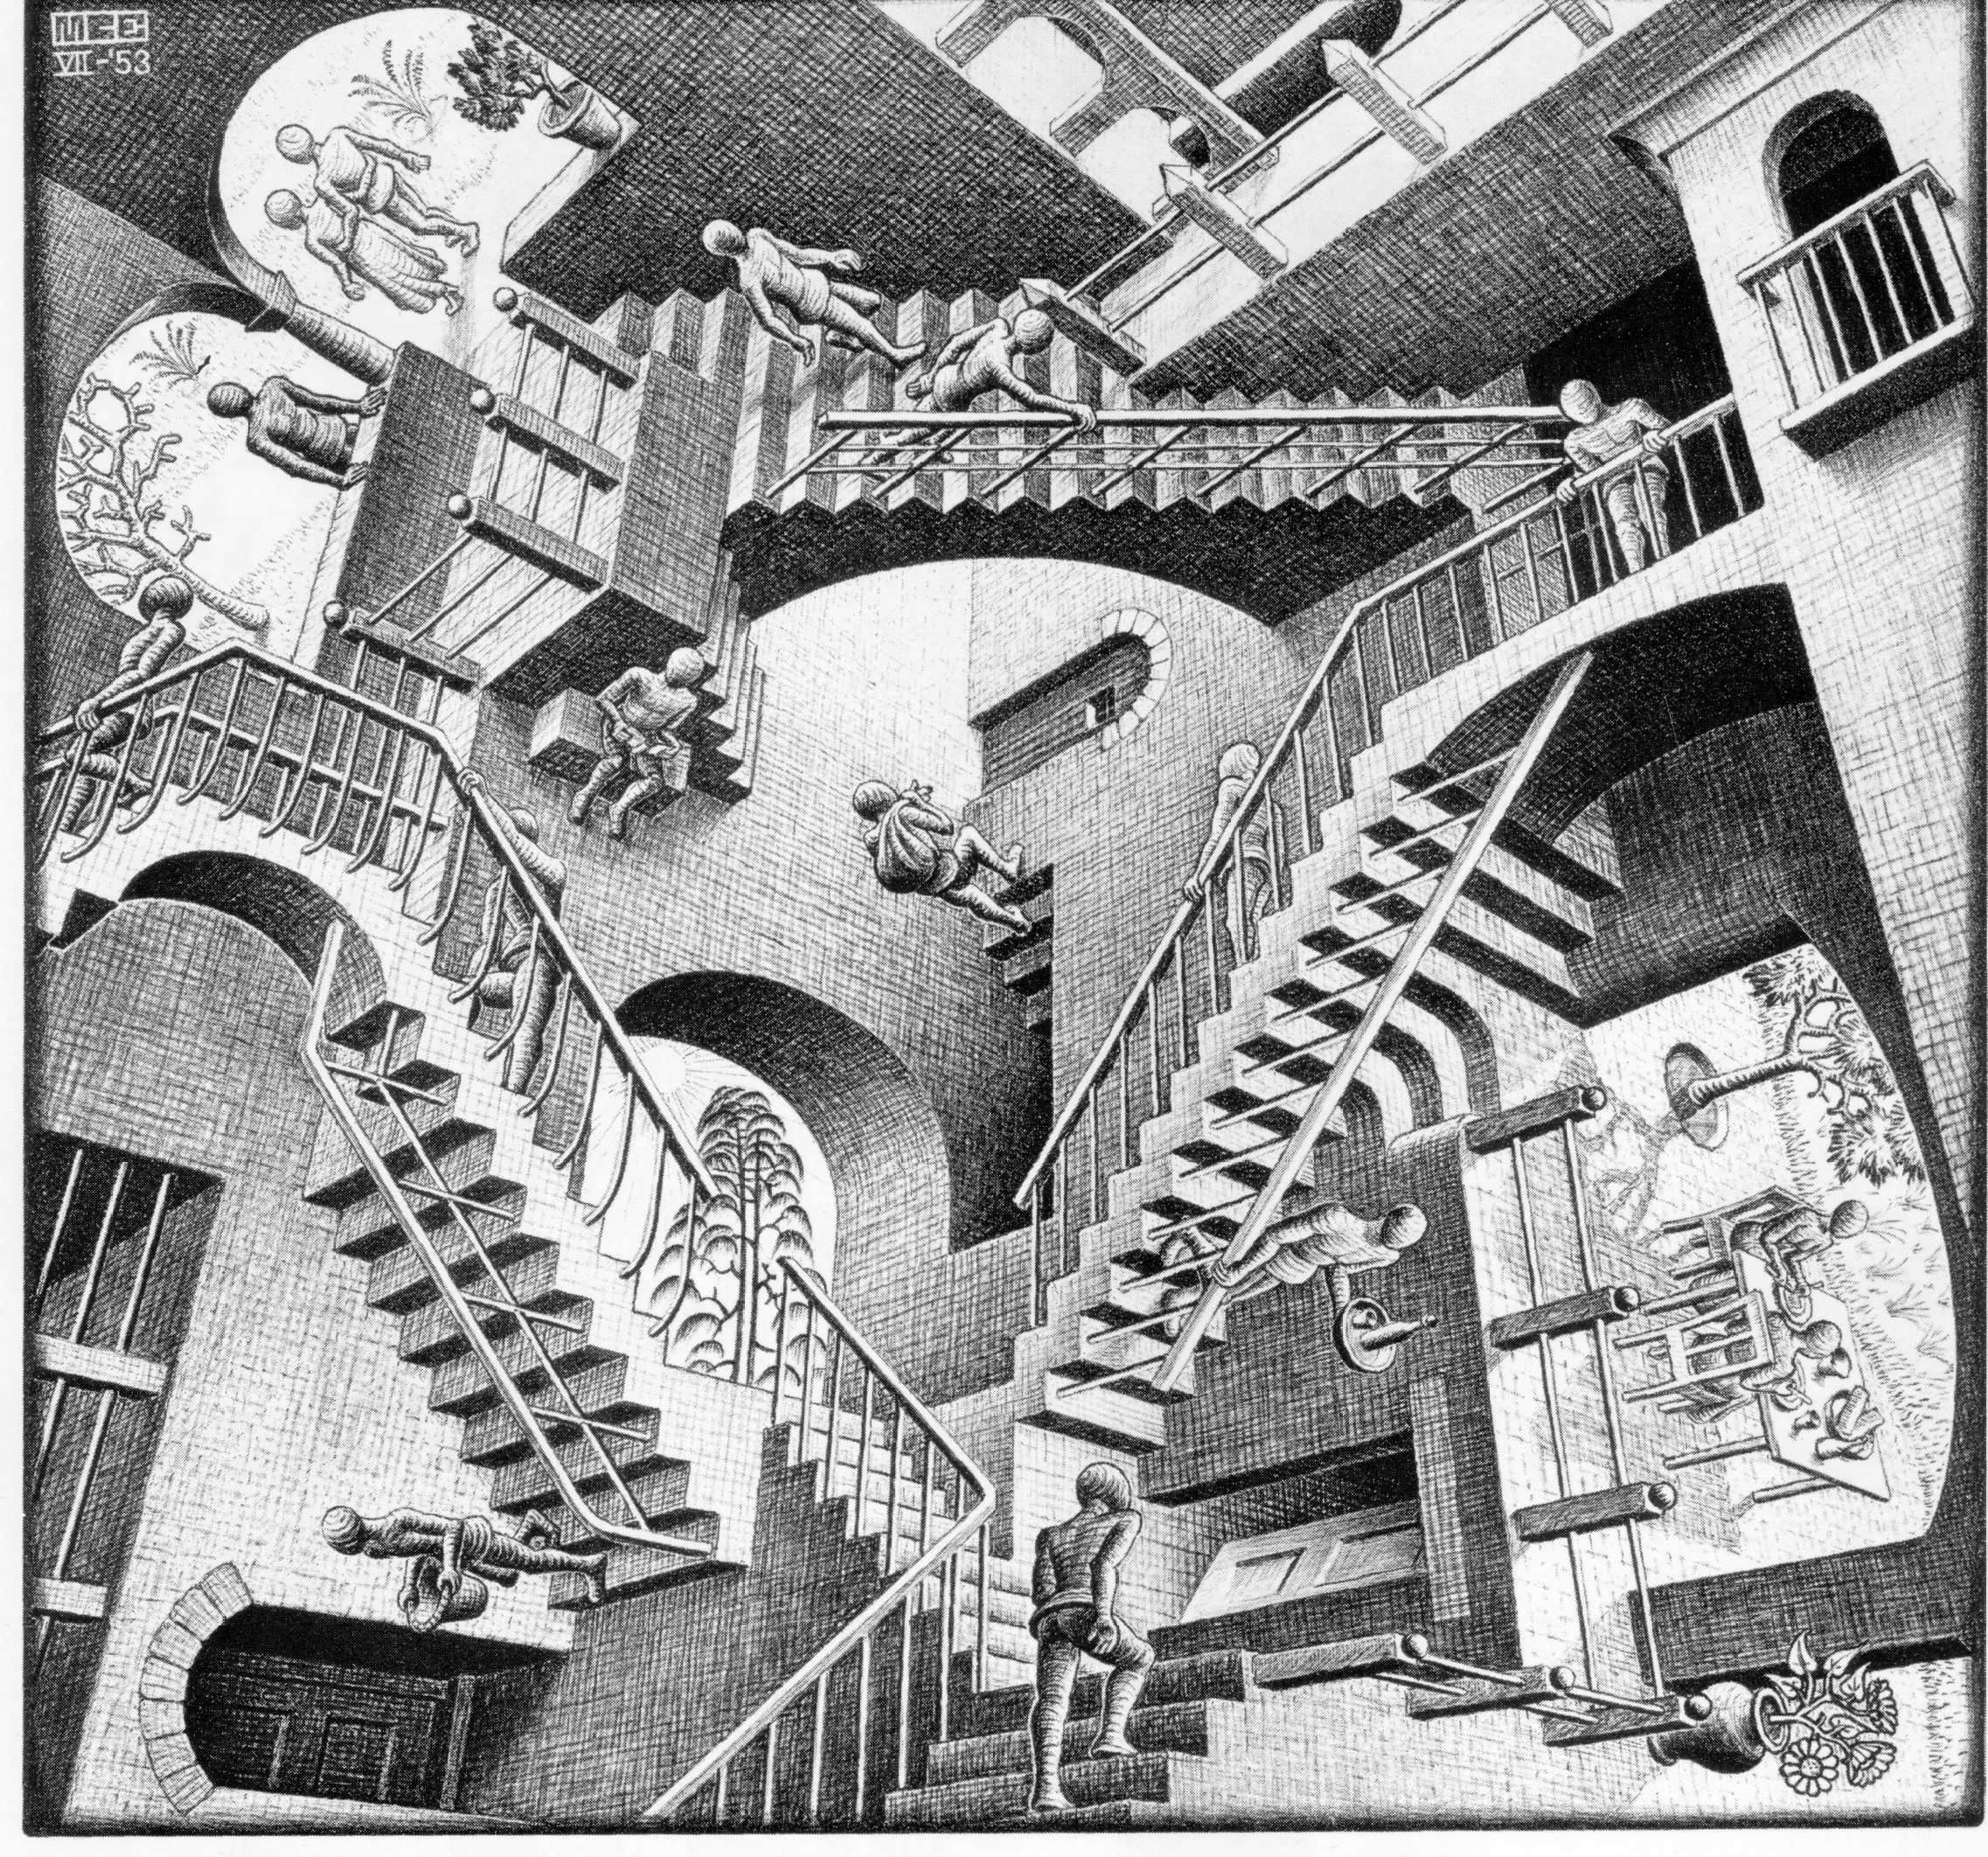 MC Escher stuff